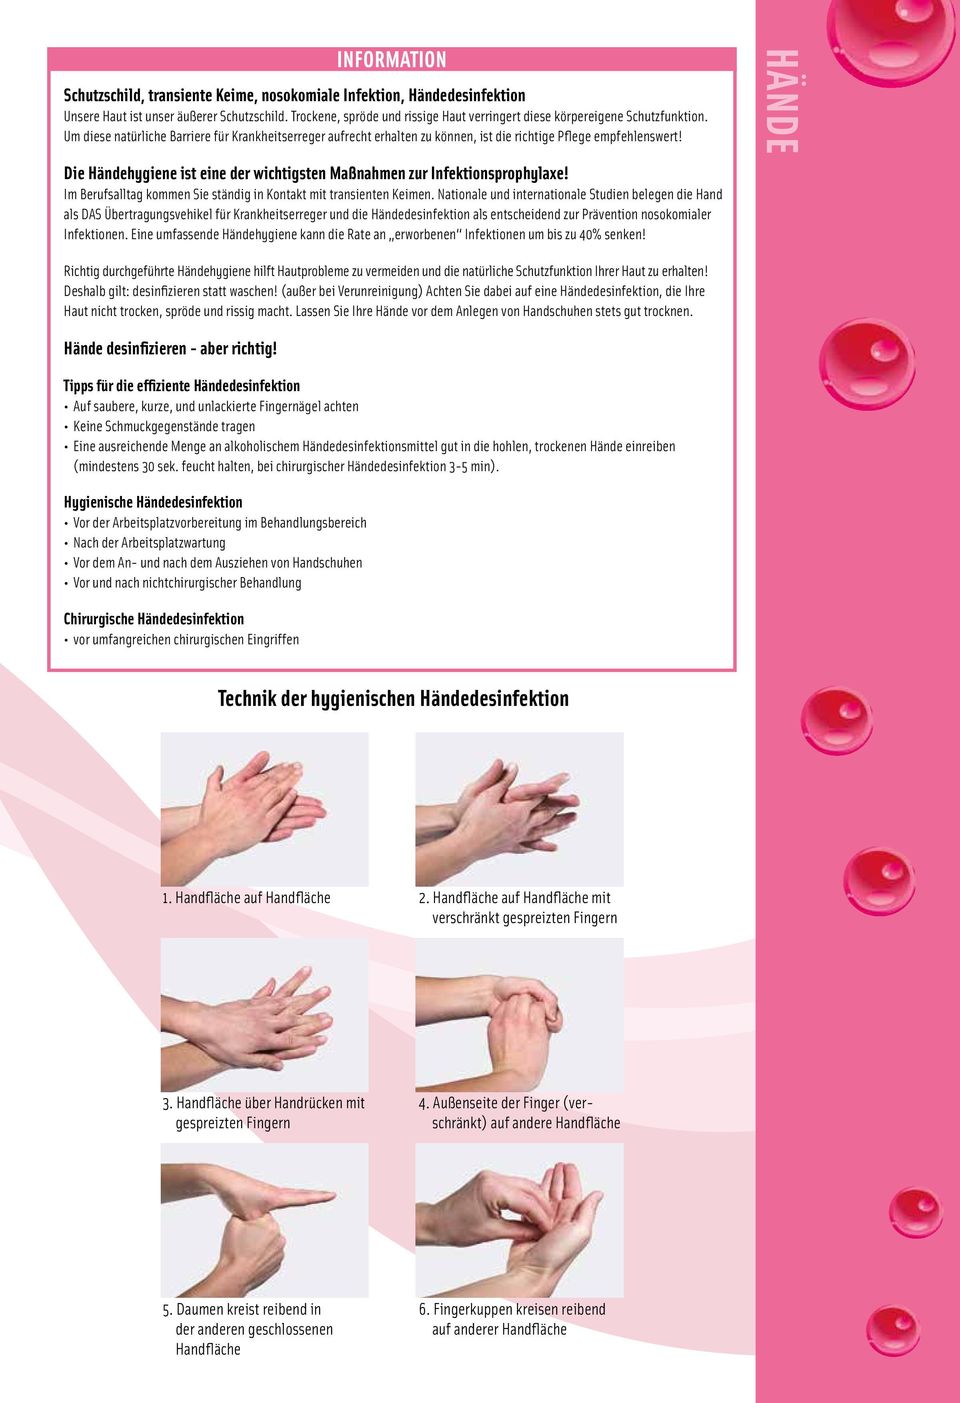 Die Händehygiene ist eine der wichtigsten Maßnahmen zur Infektionsprophylaxe! Im Berufsalltag kommen Sie ständig in Kontakt mit transienten Keimen.